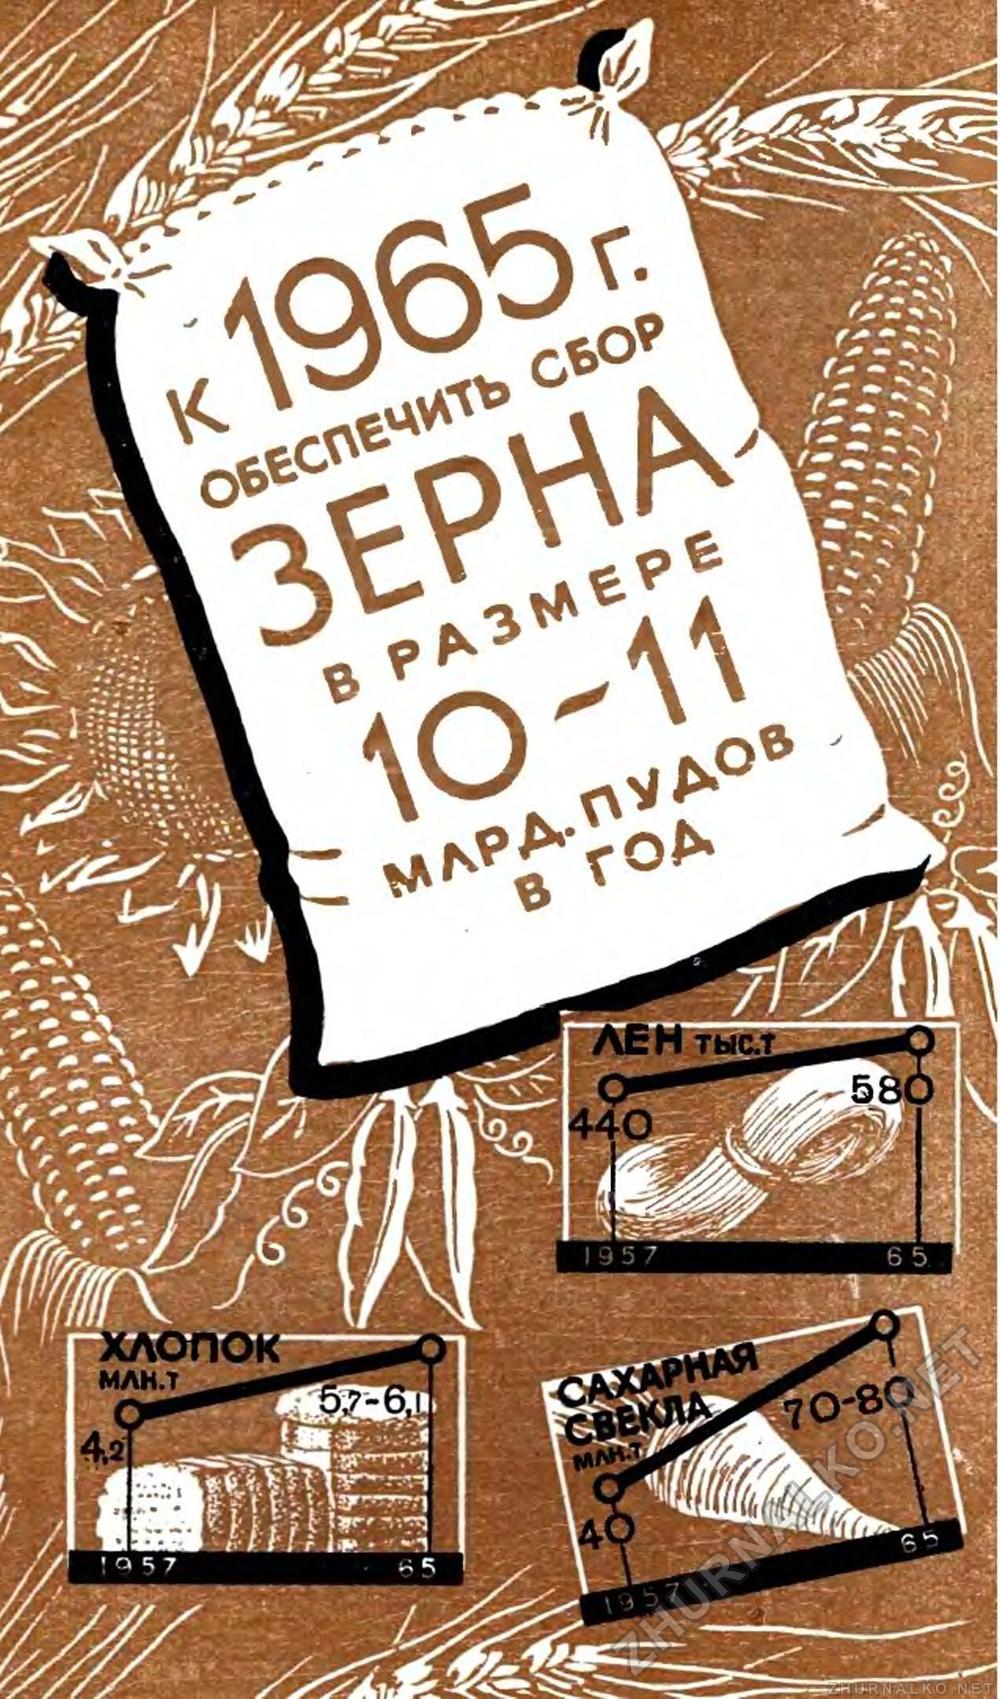   1959-01,  19